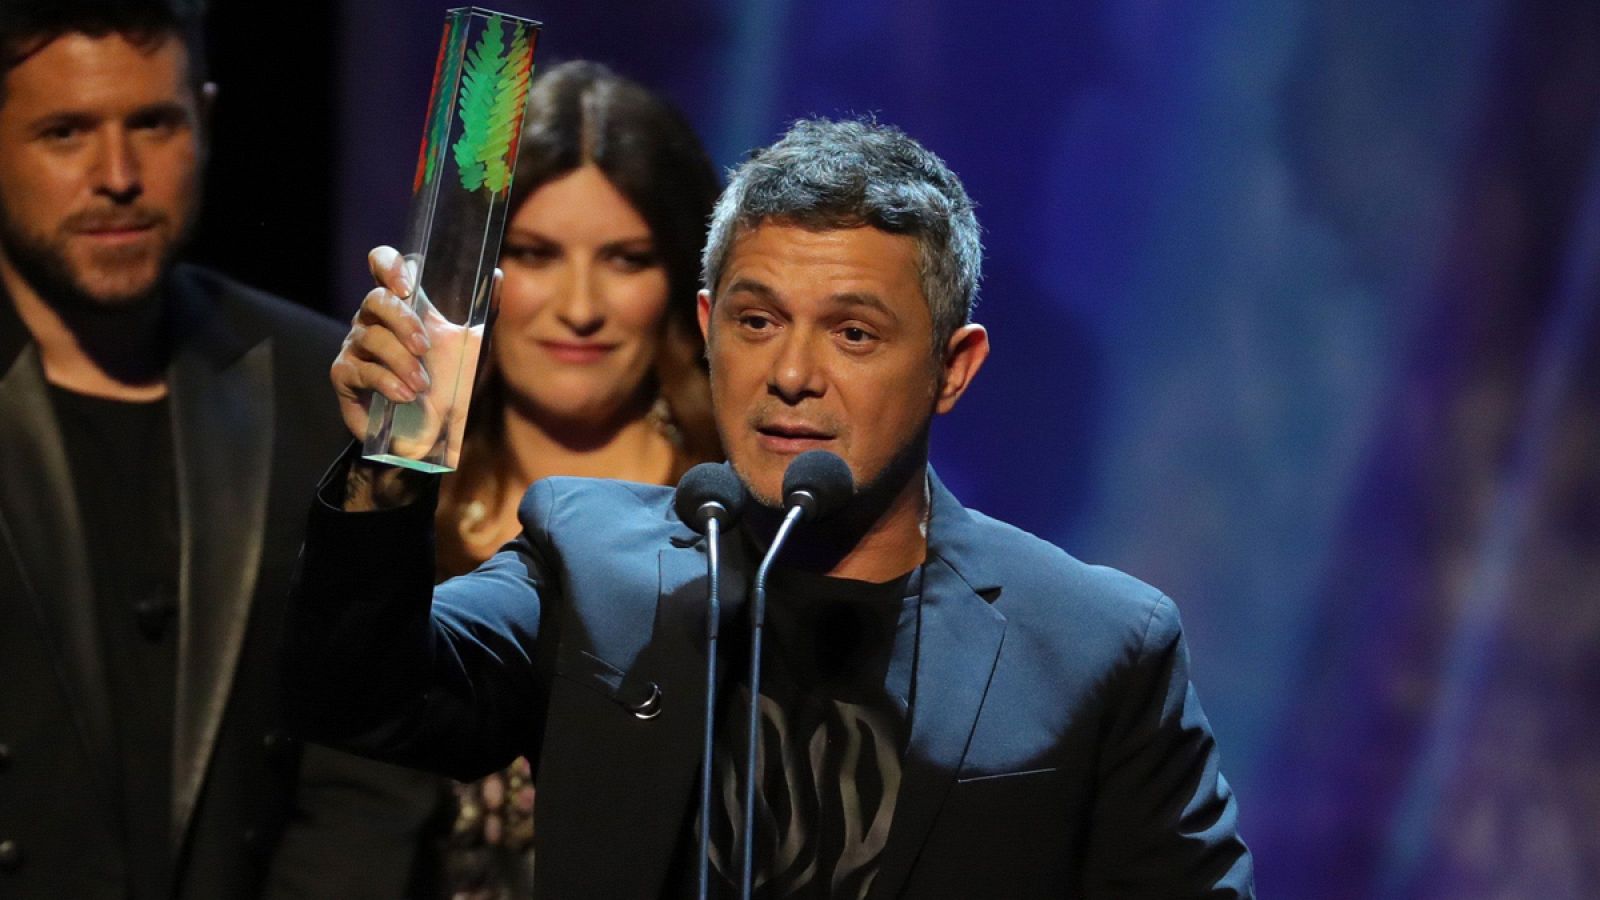 El cantante y compositor Alejandro Sanz, tras recibir el premio por su trabajo "#ElDisco".